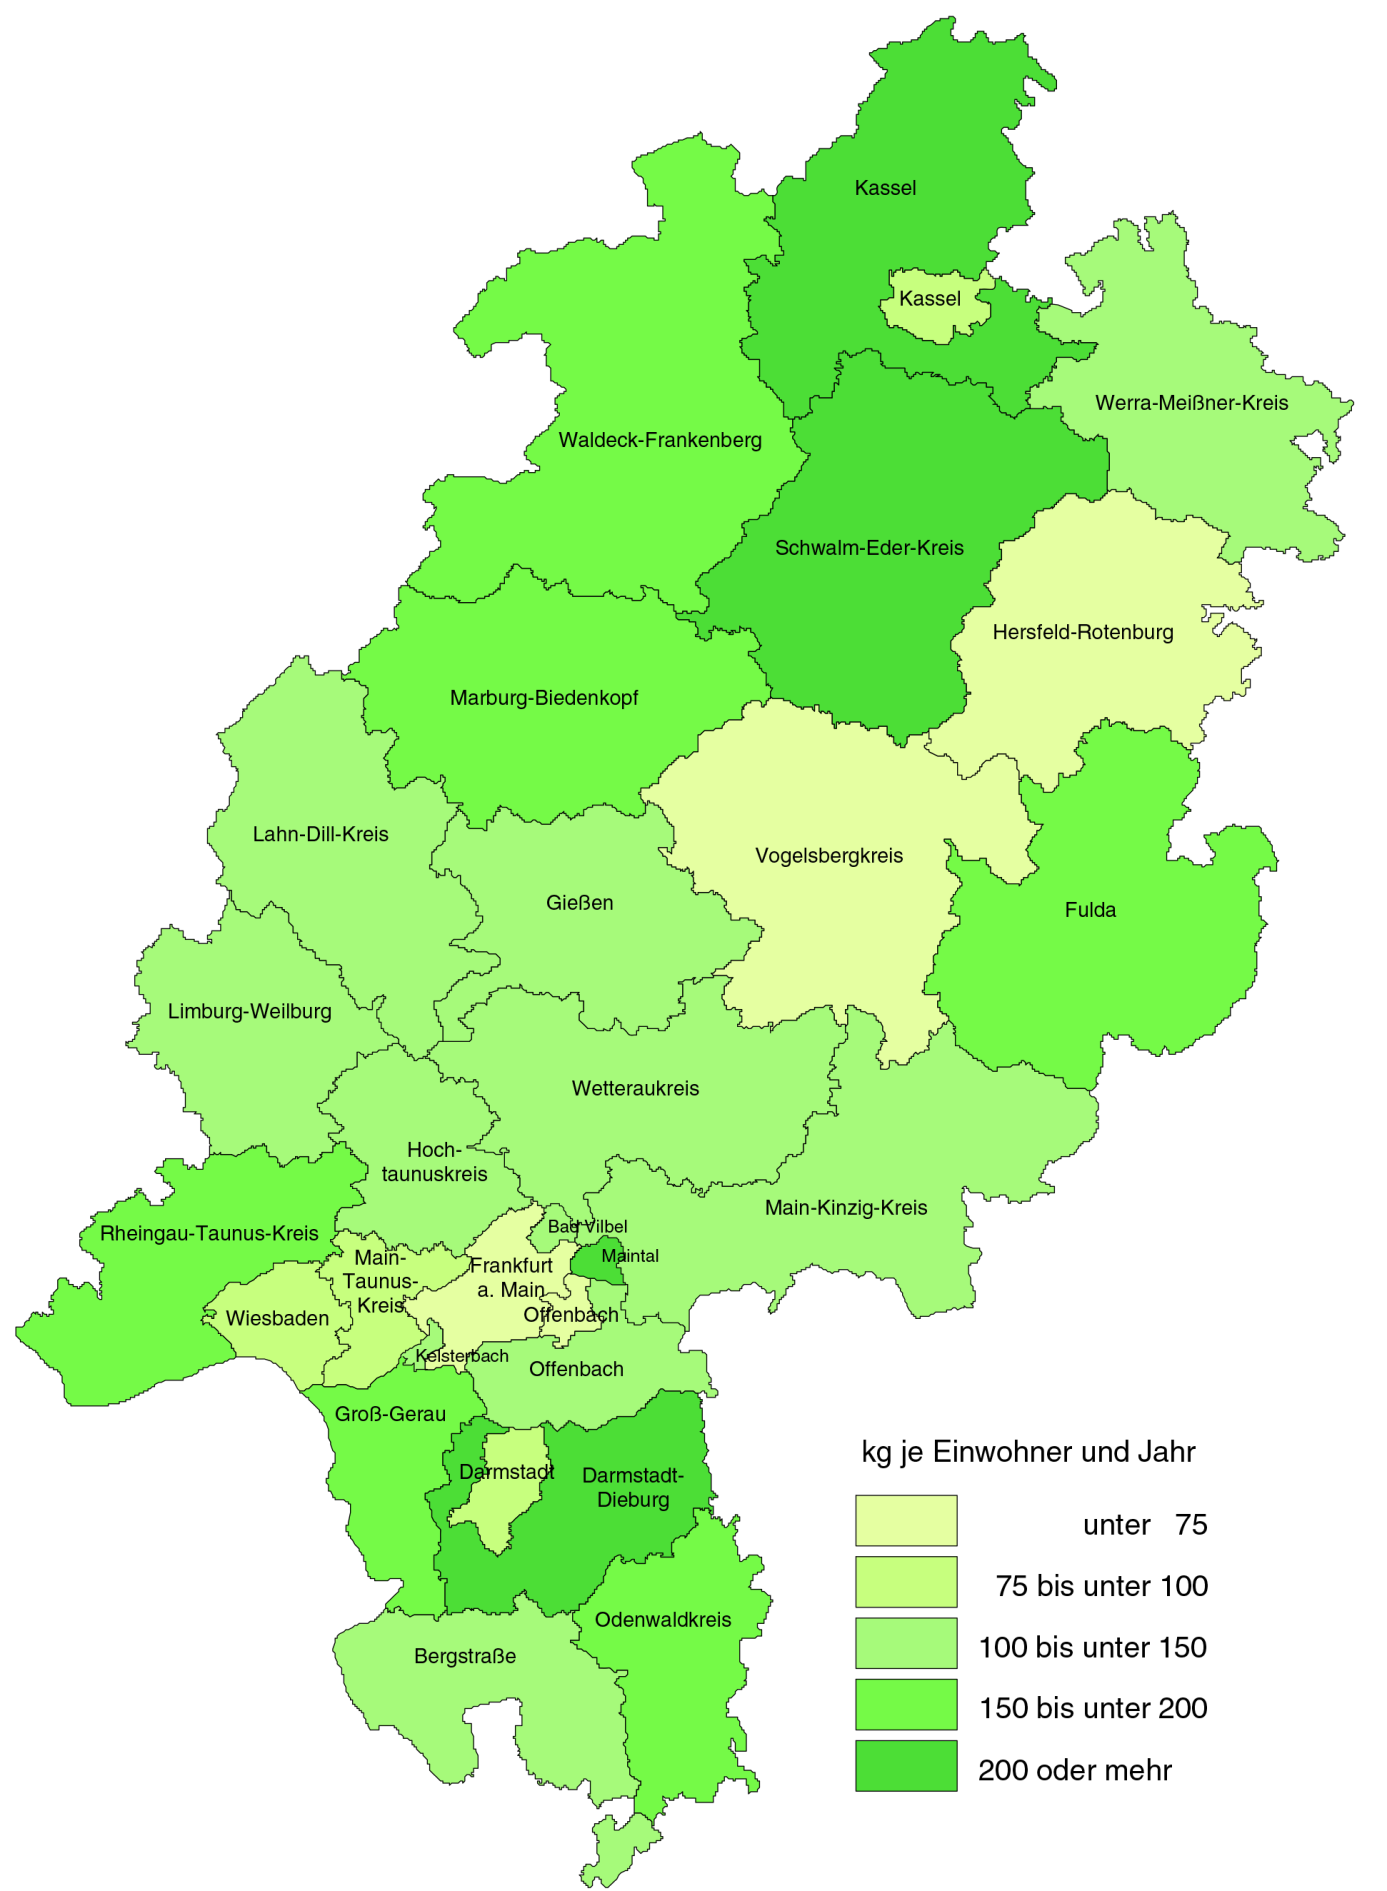 15 Beim einwohnerspezifischen Bioabfallaufkommen lagen im Jahr der Schwalm-Eder- Kreis, die Stadt Maintal und der Landkreis Kassel mit jeweils über 200 kg je Einwohner und Jahr bei der